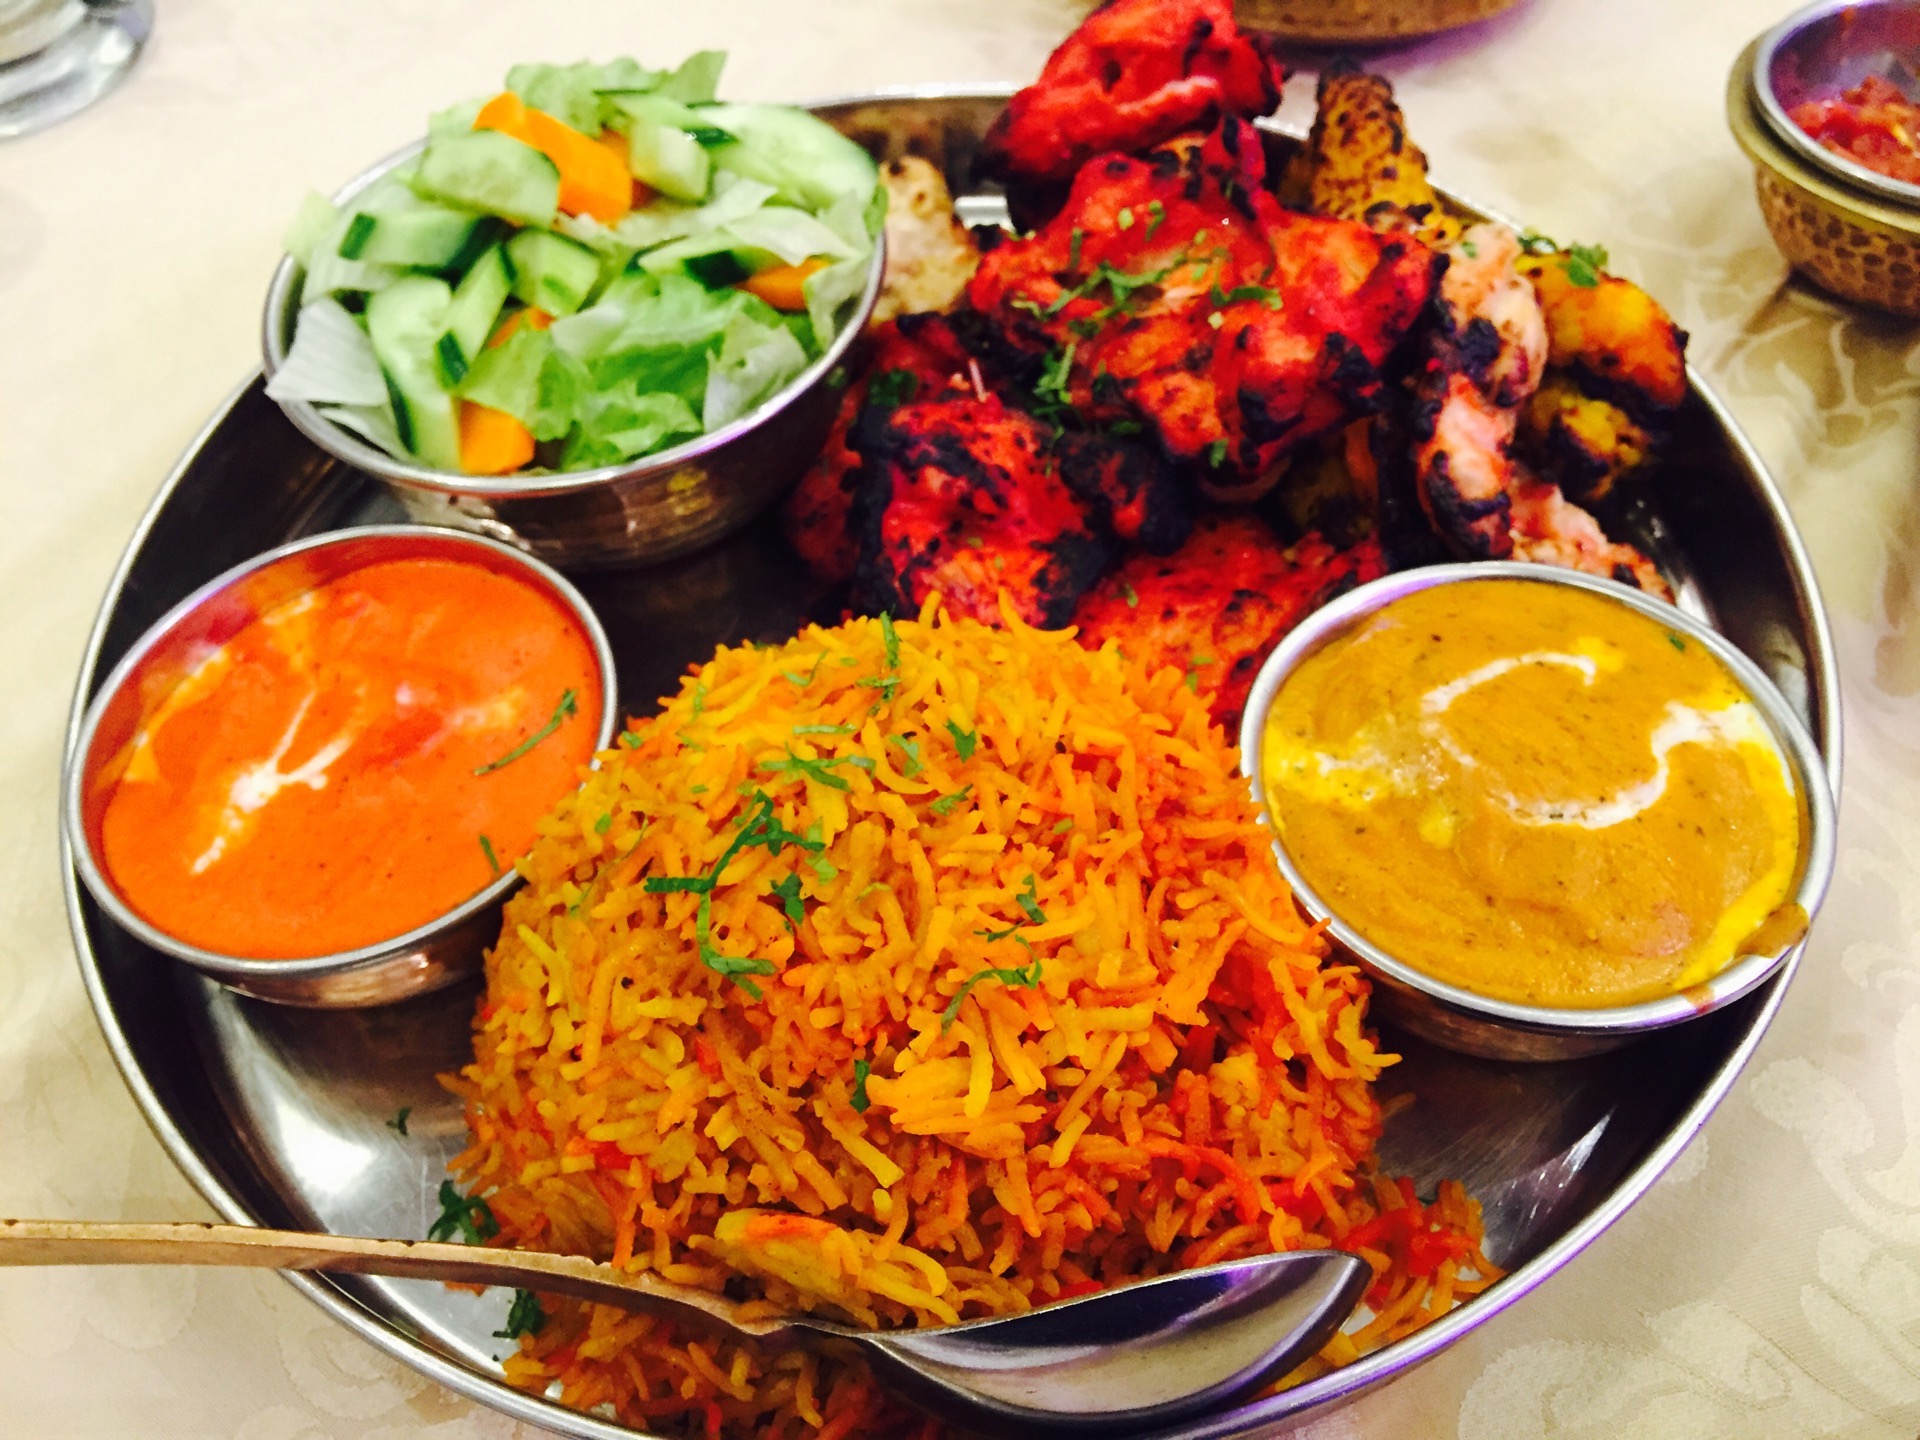 افضل مطاعم هندية في جدة .